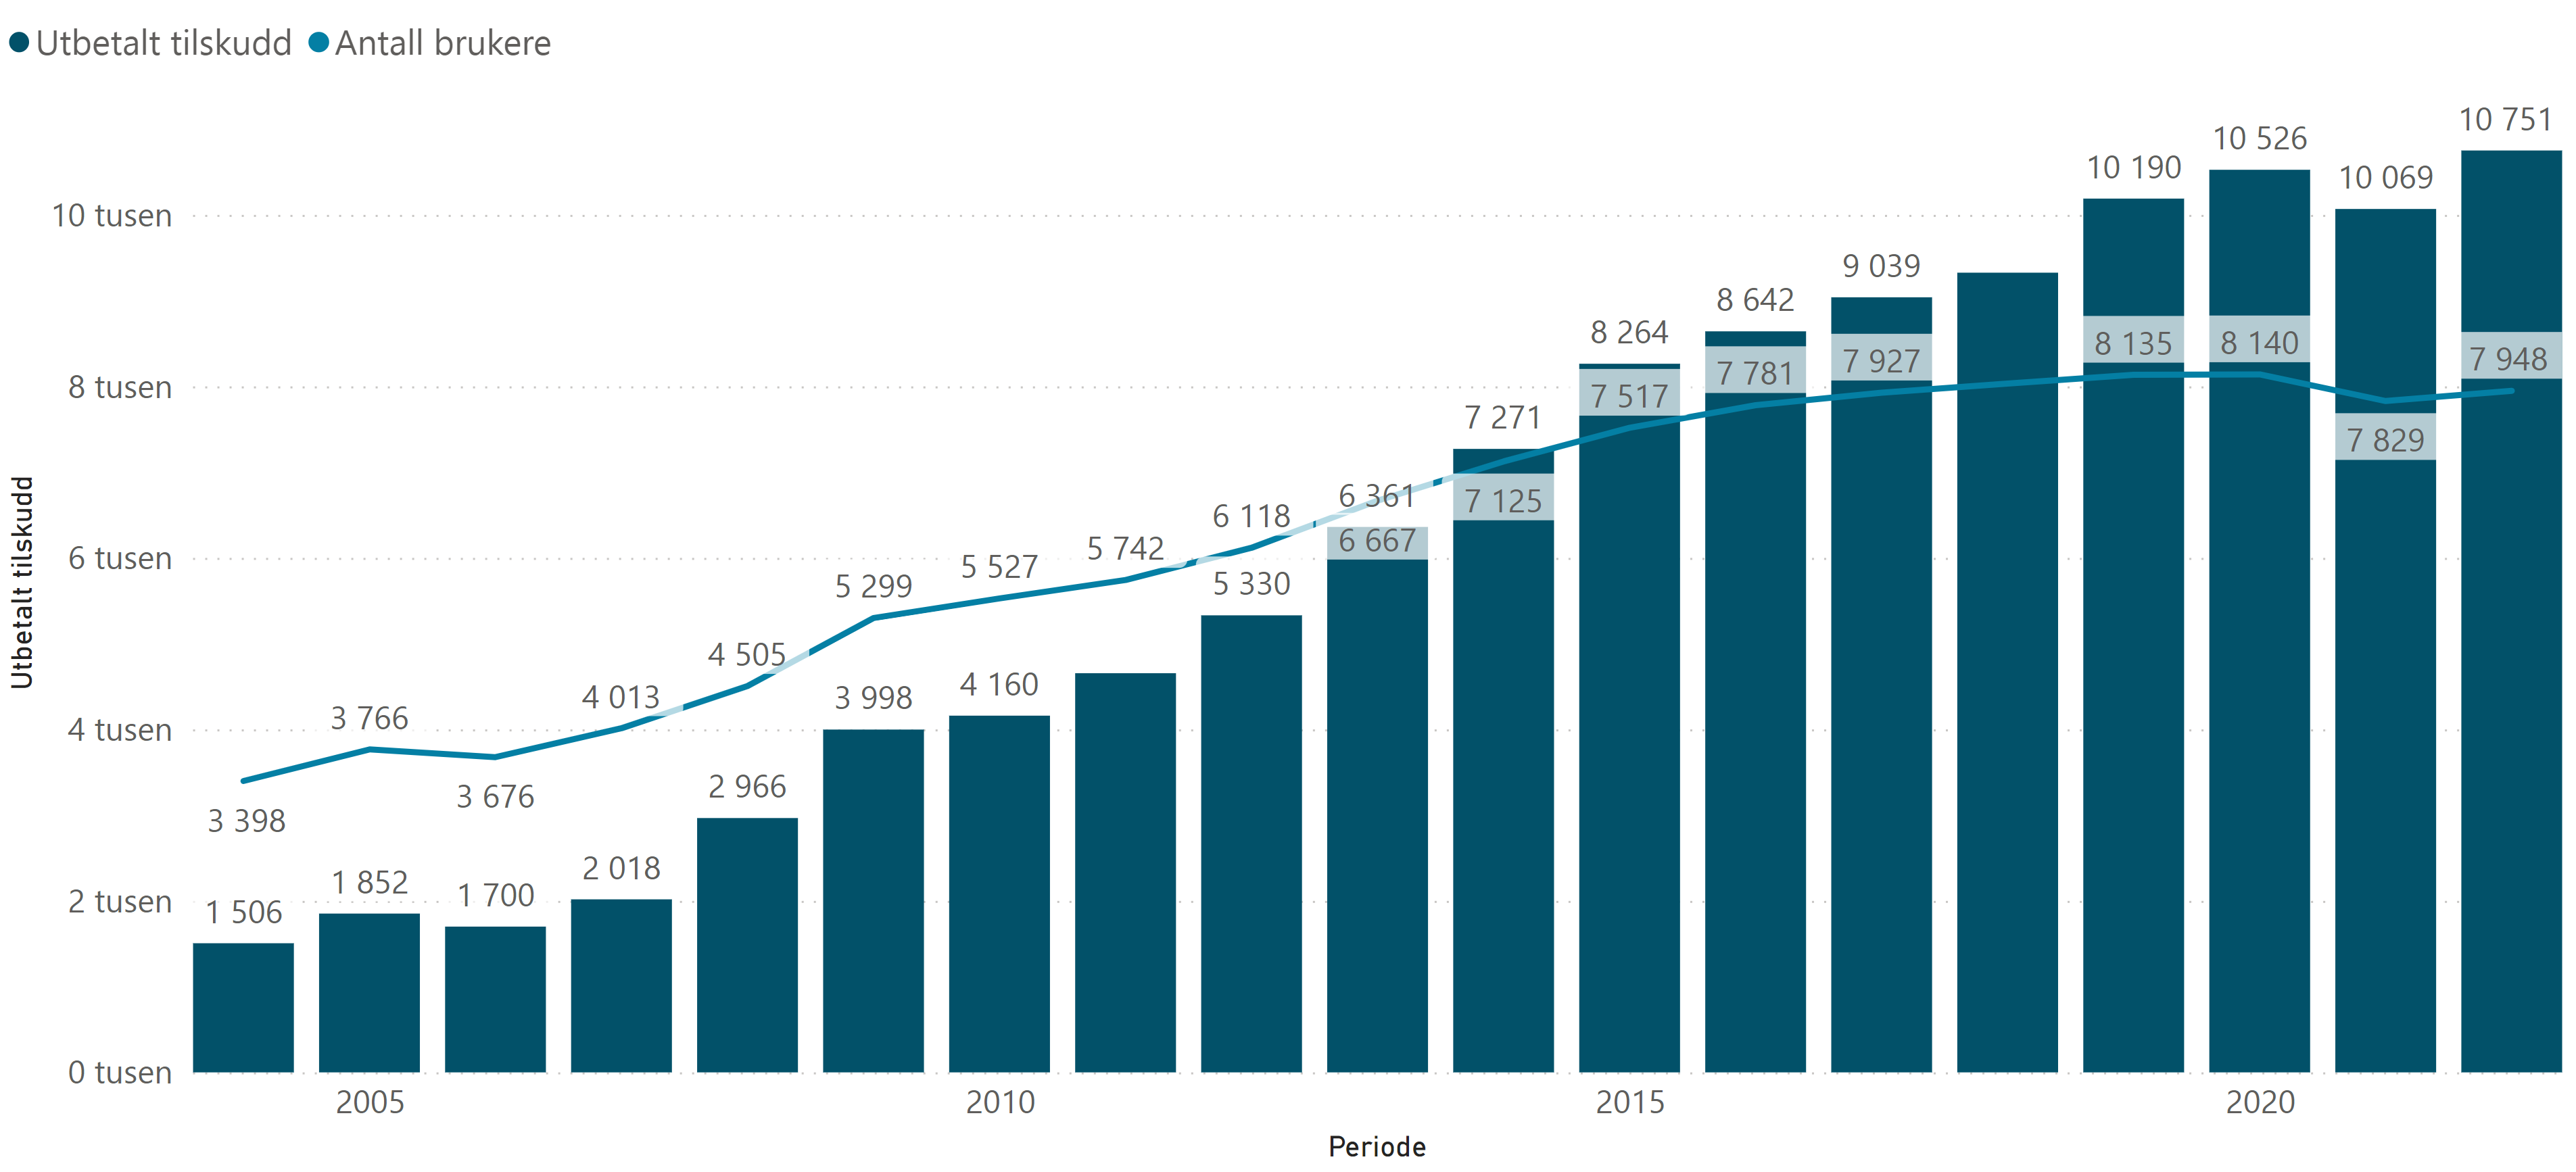 Utvikling i tilskuddsordningen med utbetalt tilskudd og antall brukere (2004 - 2022)